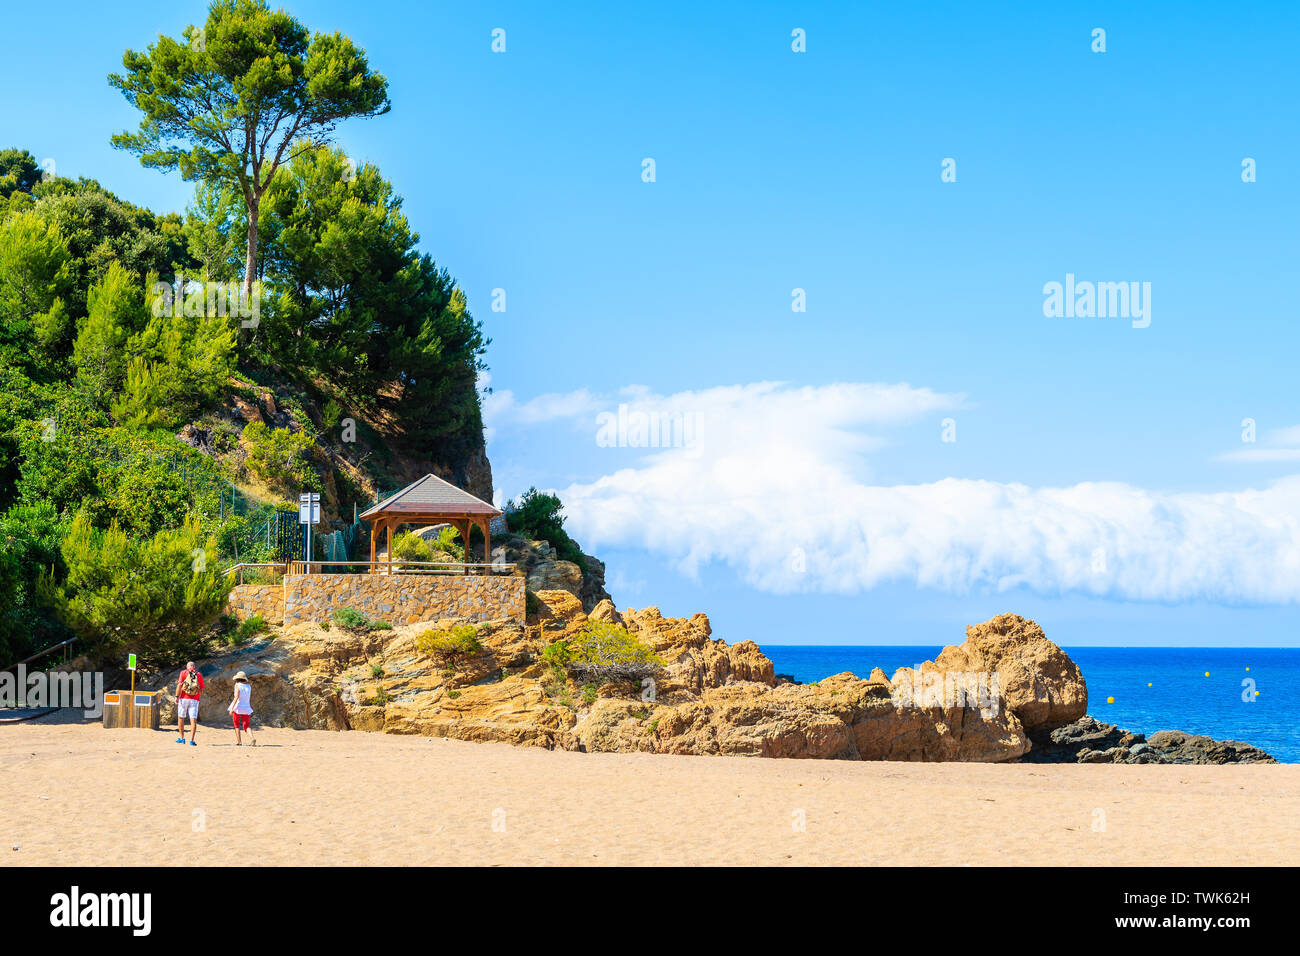 Coppia di turisti passeggiate sulla spiaggia di sabbia verso la scogliera percorso in Sa Riera village, Costa Brava, Spagna Foto Stock